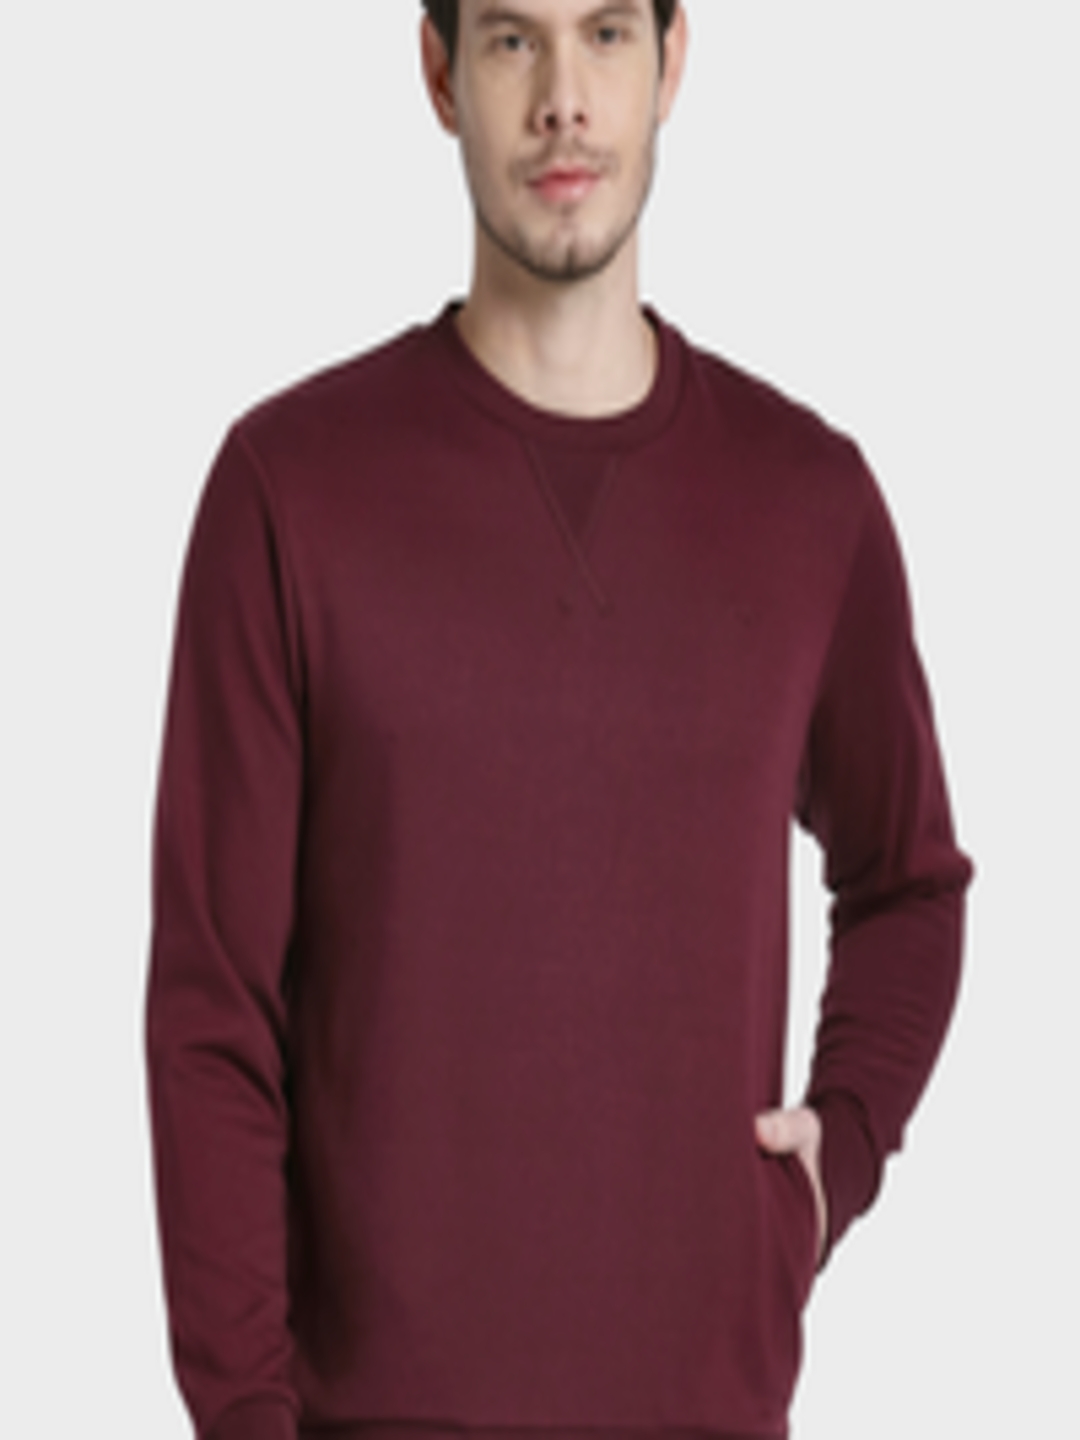 Buy ColorPlus Men Maroon Solid Sweatshirt - Sweatshirts for Men ...